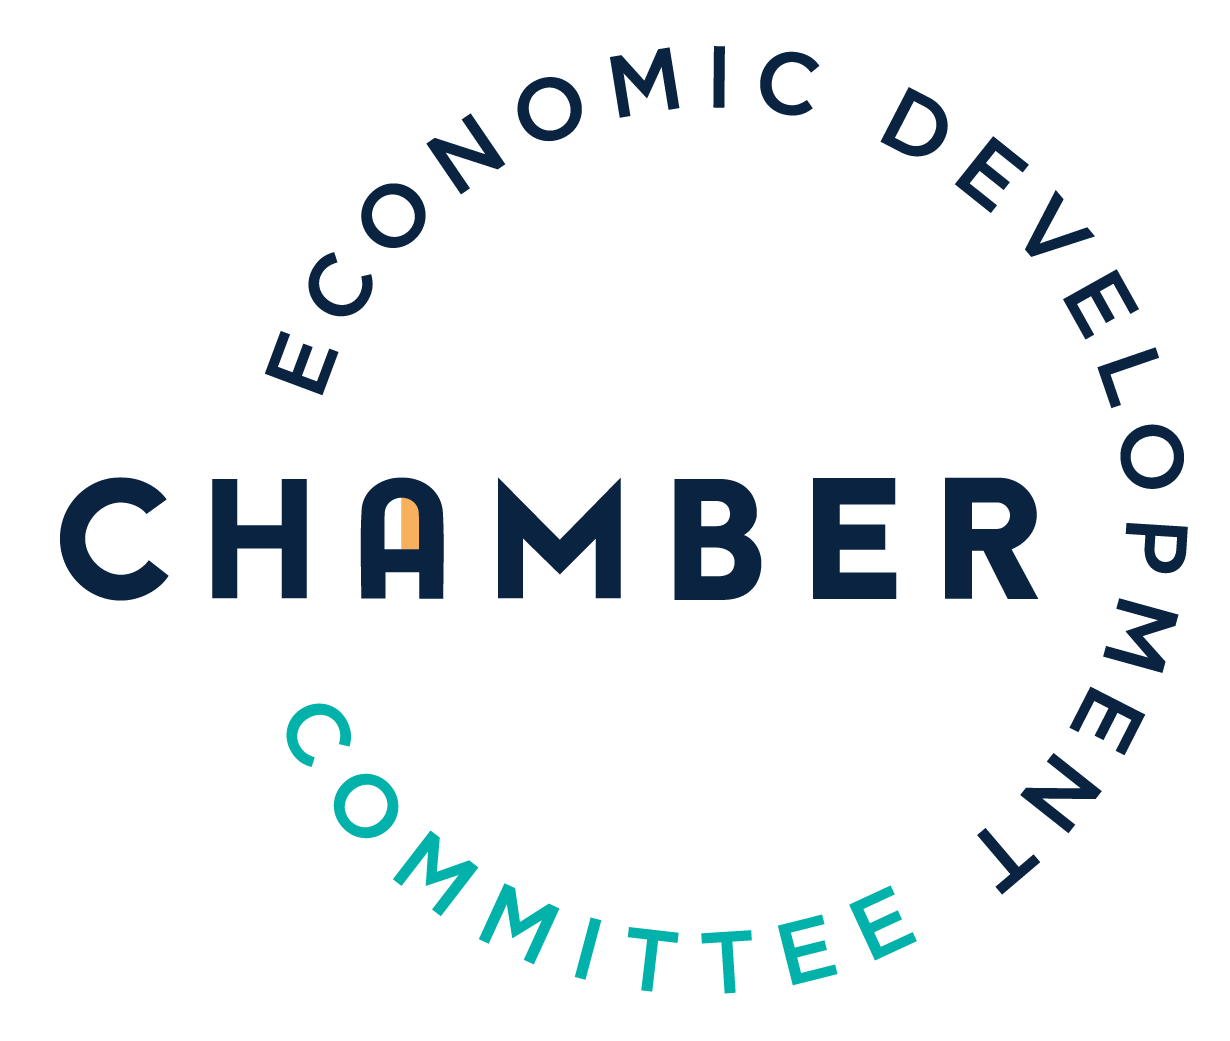 Economic Development Committee